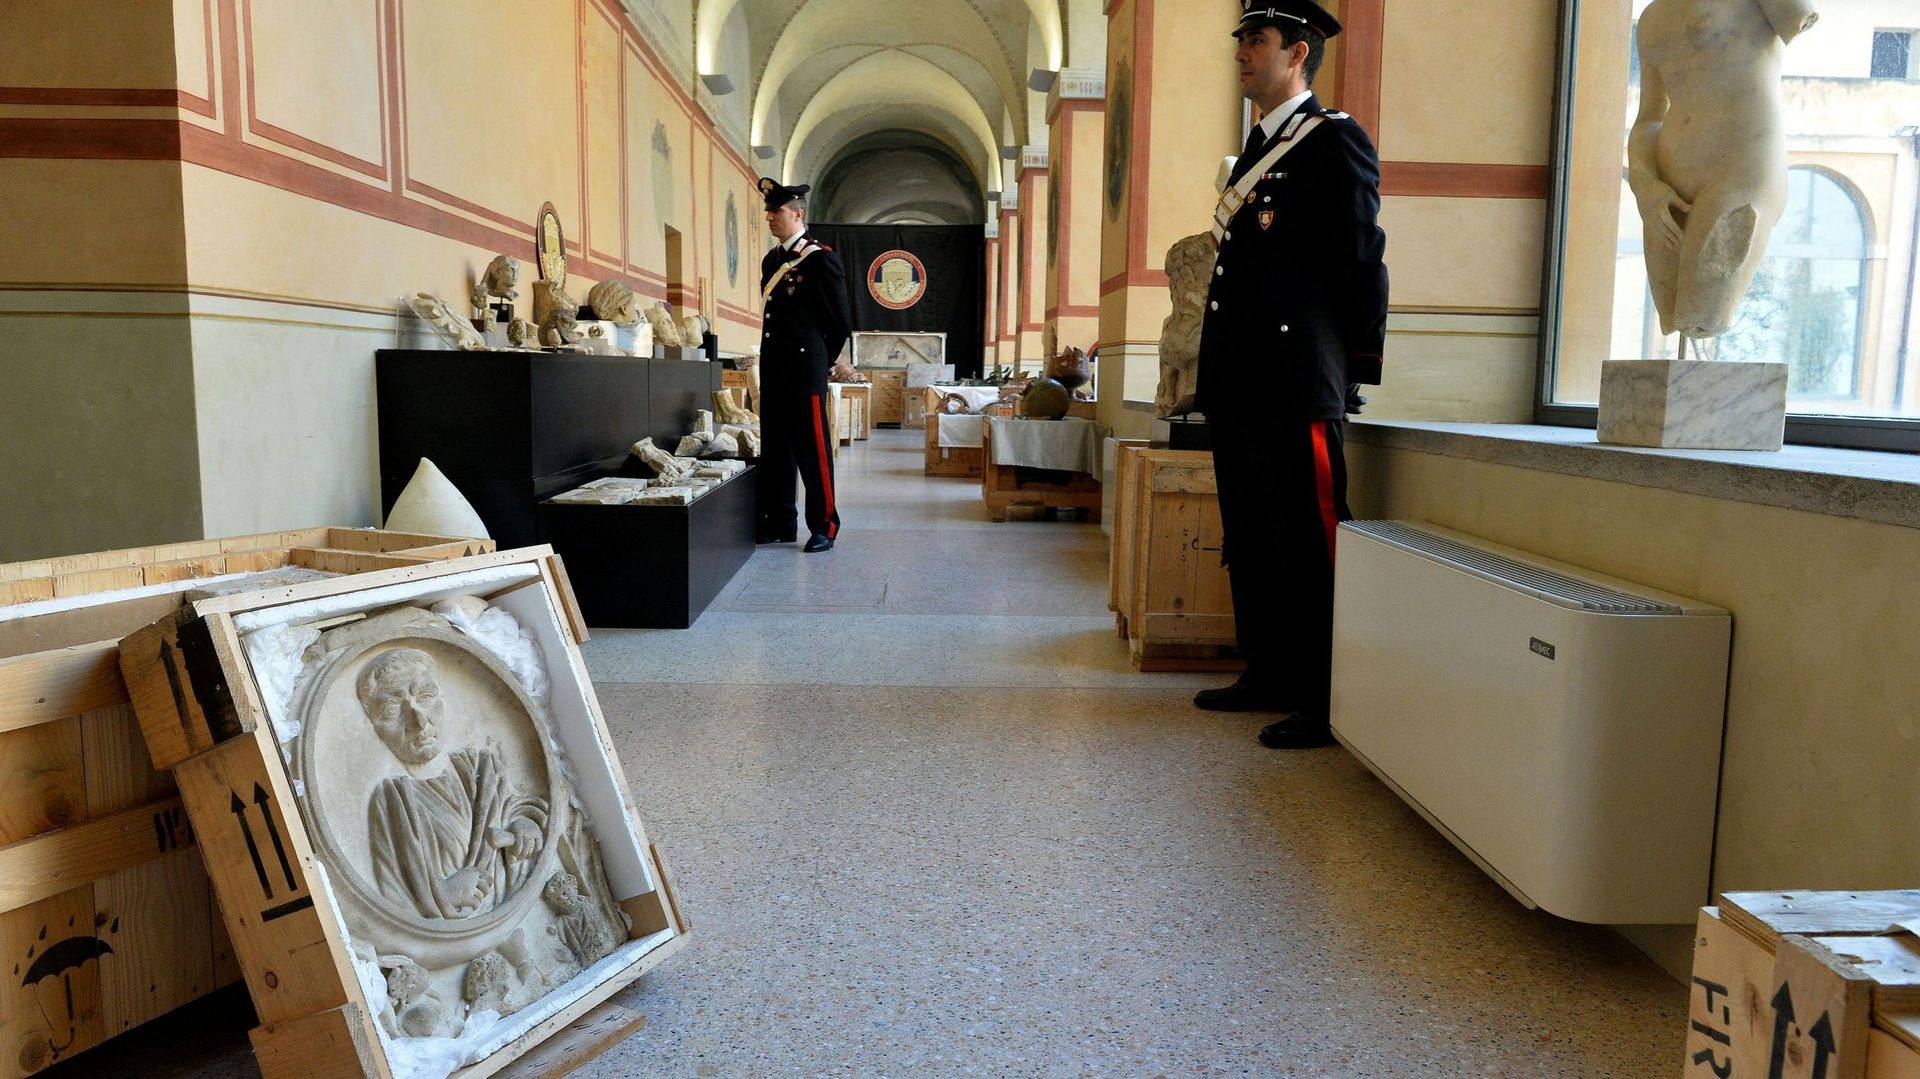 Des objets archéologiques saisis à Rome en 2016 alors qu’un réseau international de trafiquants s’apprêtait à les vendre en Grande-Bretagne, au Japon et aux Etats-Unis. Au total ce sont 45 caisses contenant des dizaines de milliers de reliques archéologiq